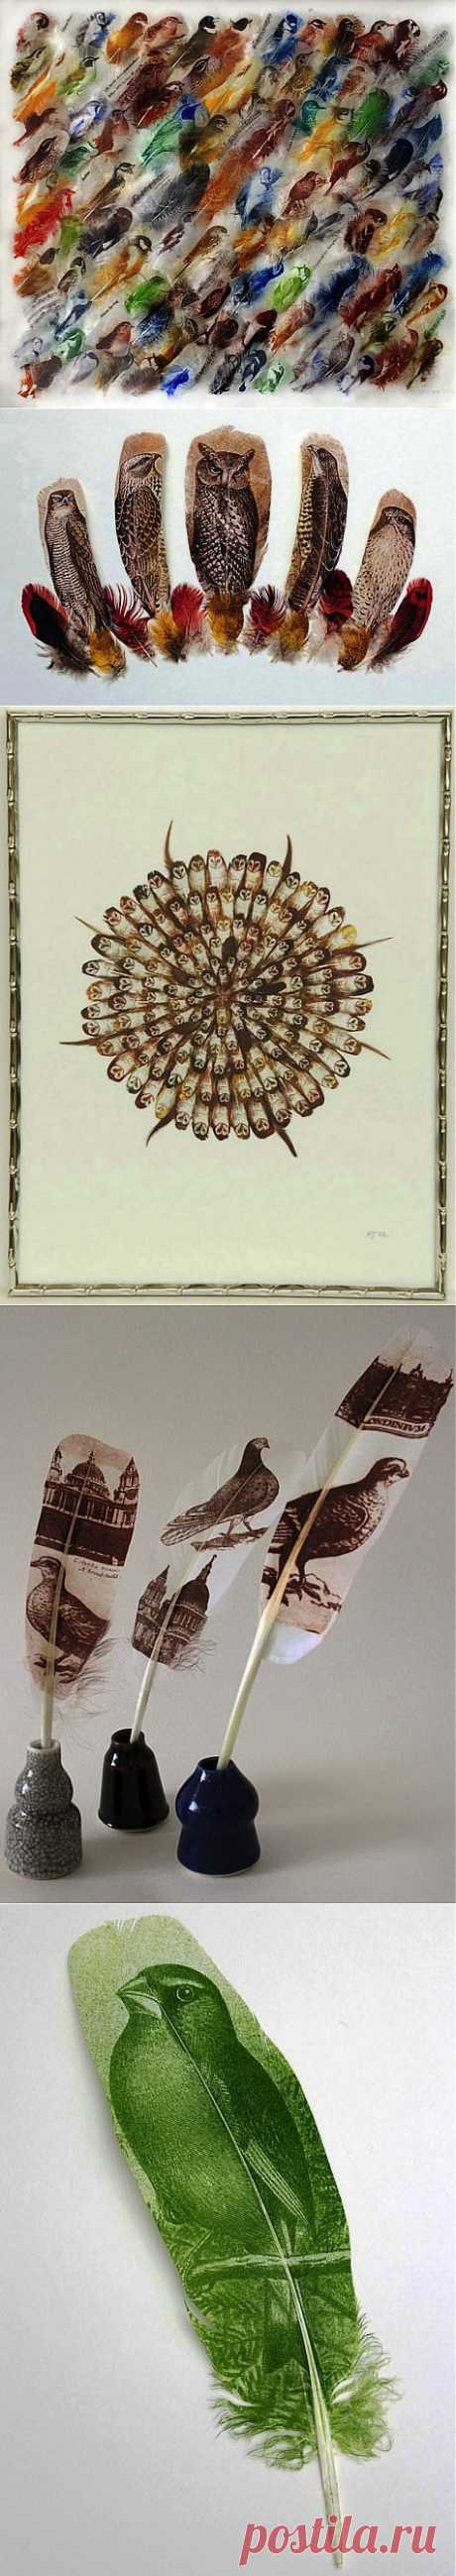 Перья вместо холста: удивительные рисунки птиц | Изюминки